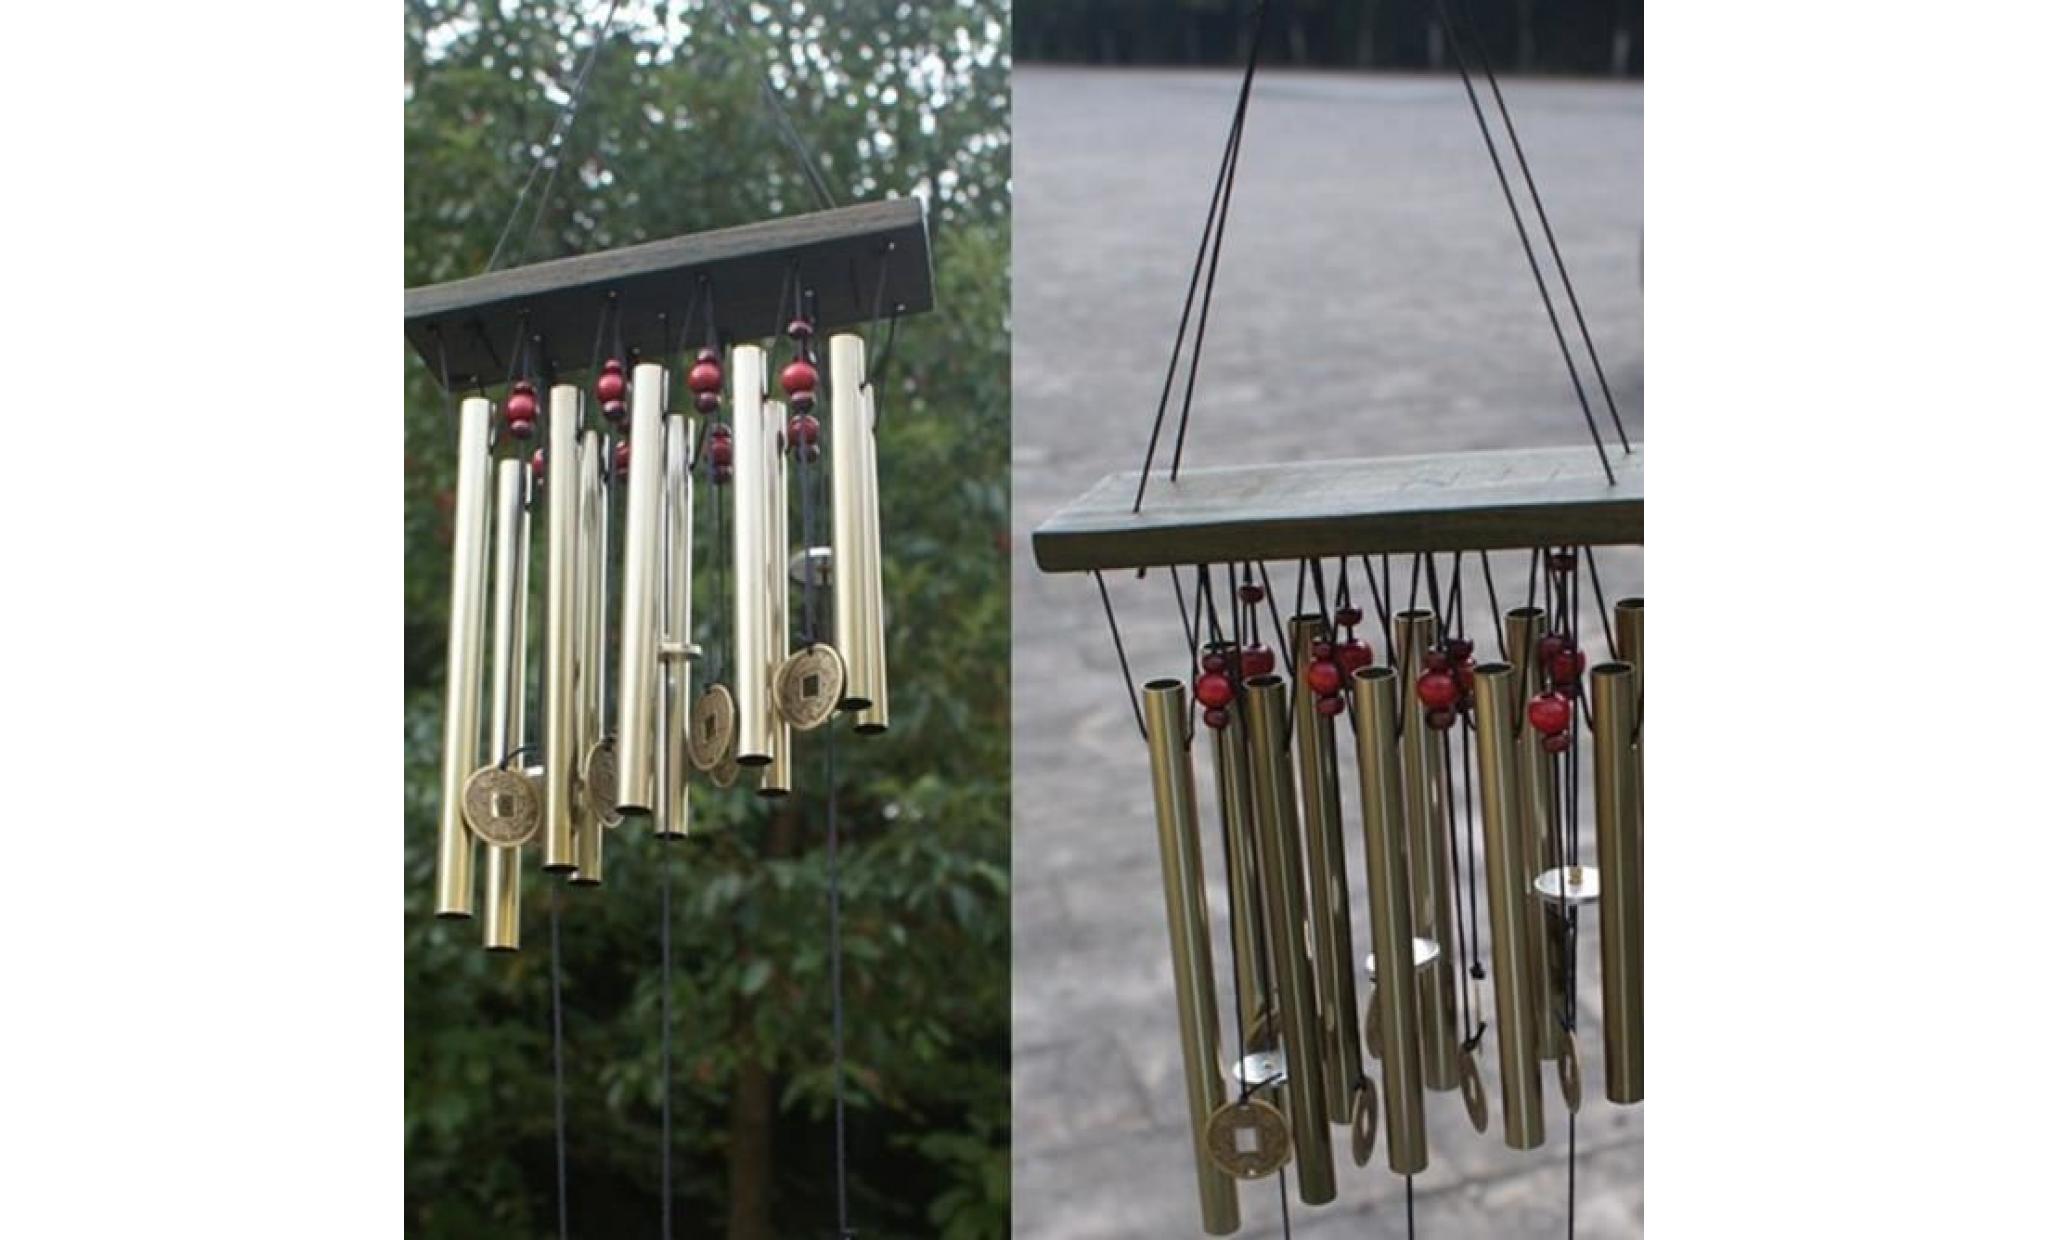 incroyable 10 tubes bois chapelle eglise cloches carillon de vent yard décor wh house595